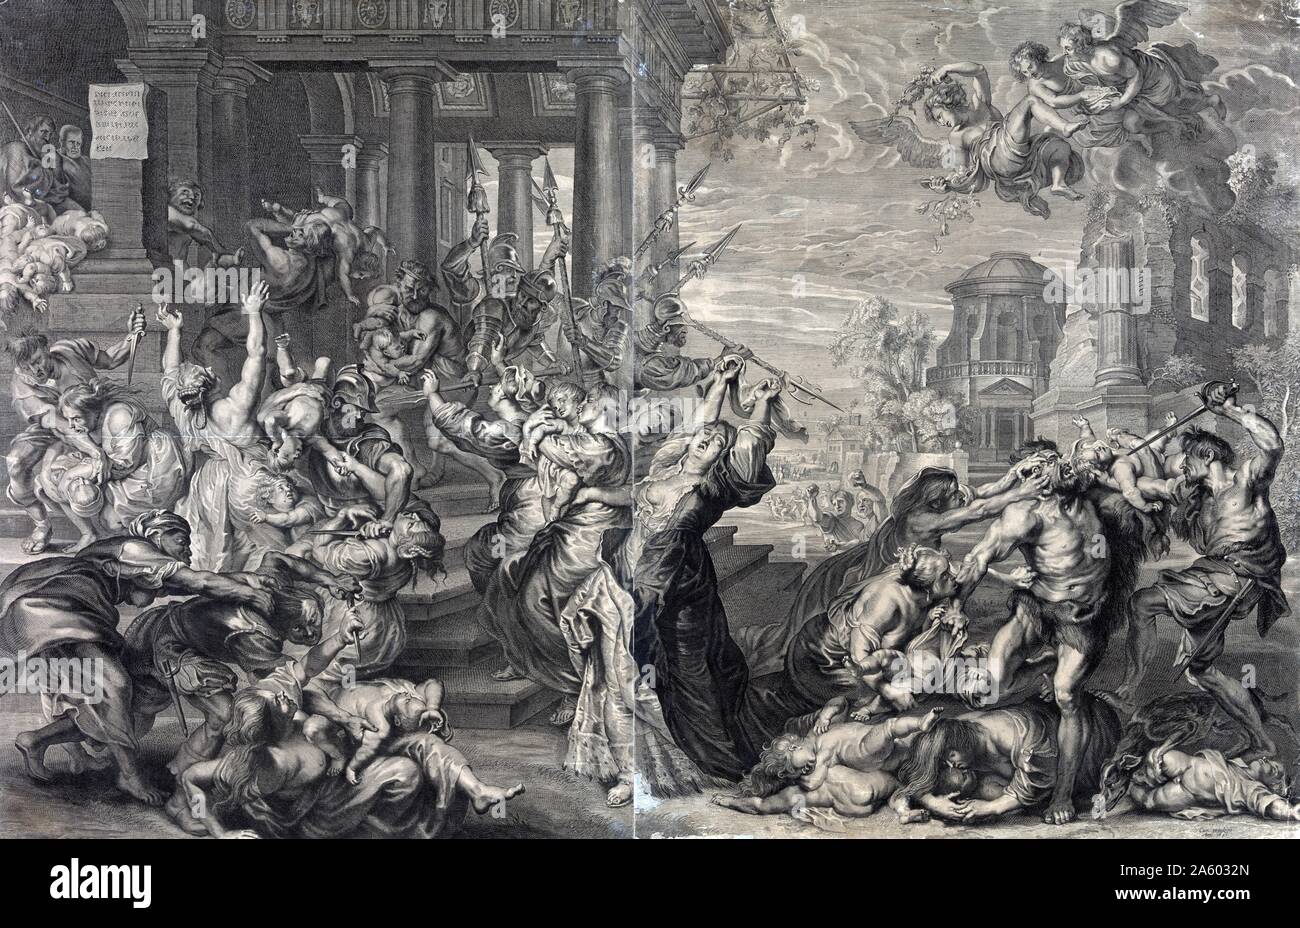 Drucken Sie, zeigt das Massaker der unschuldigen sortiert nach Herodes, aus Sicht des 17. Jahrhunderts von Rubens. Druck, Gravur, befindet sich das Massaker der unschuldigen sortiert nach Herodes, aus Sicht des 17. Jahrhunderts. Stockfoto